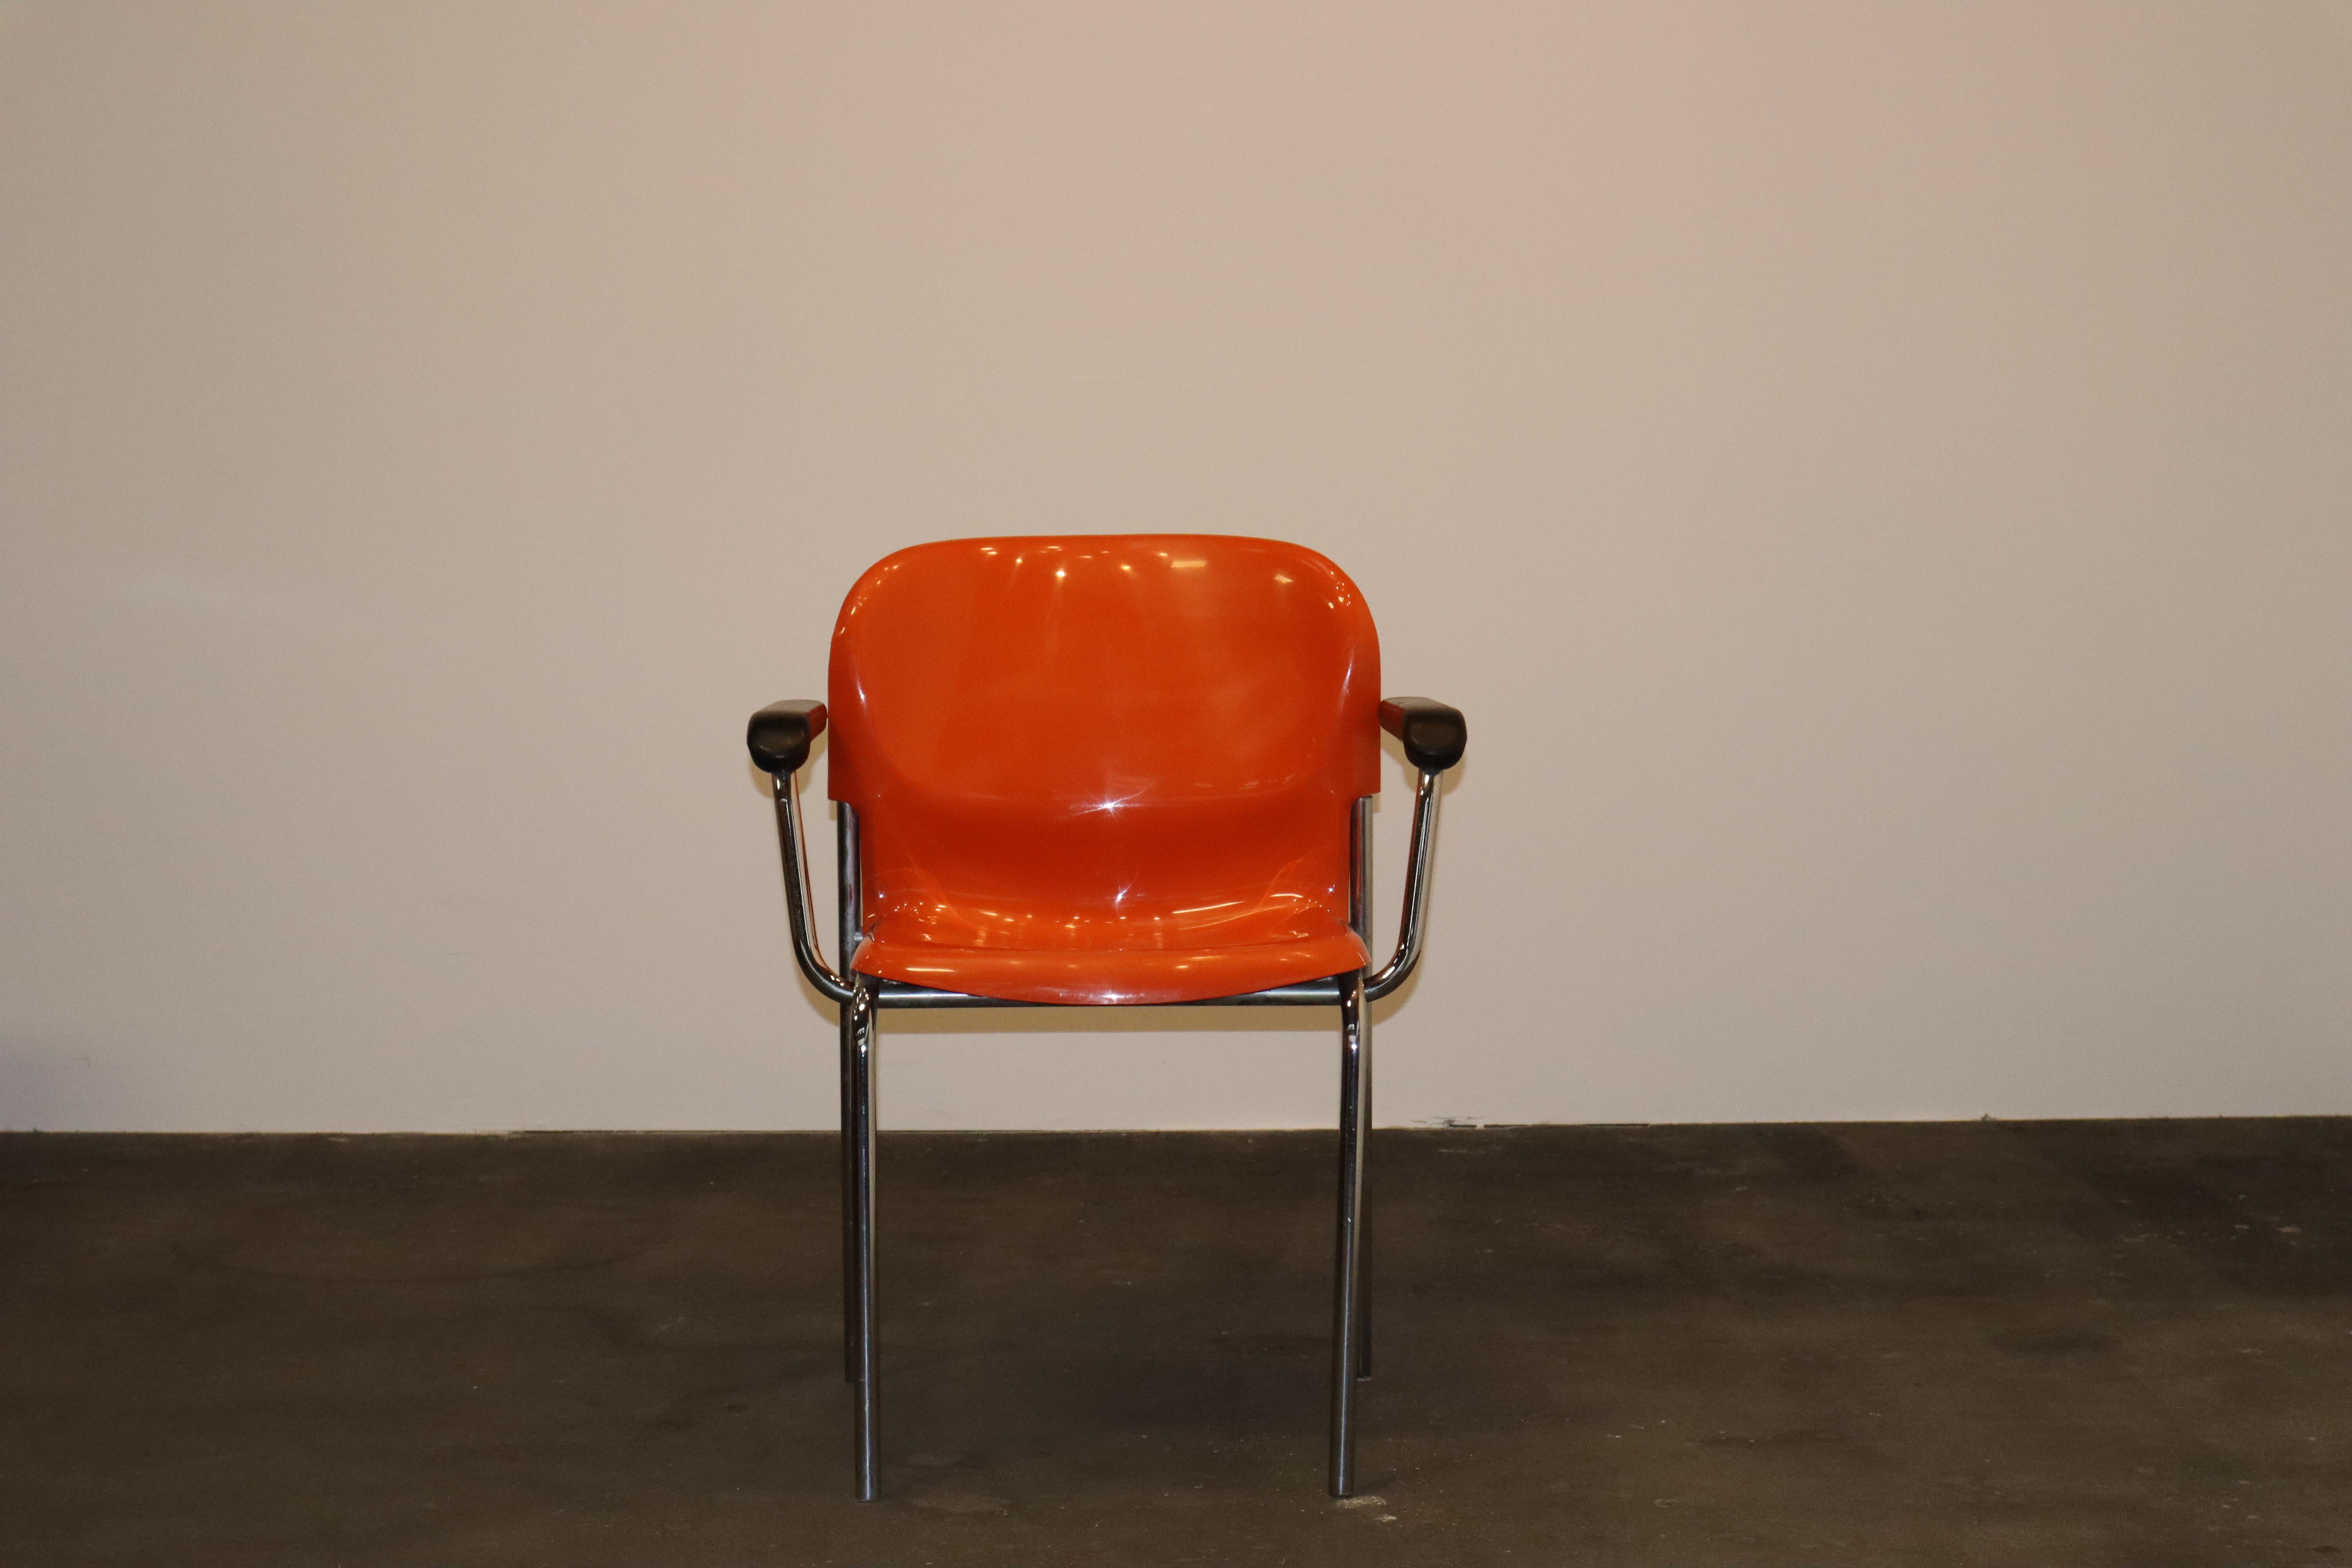 Model Swing SM400K armchair in orange molded plastic and chromed tube steel designed by Gerd Lange for Drabert, Germany, 1978.
 